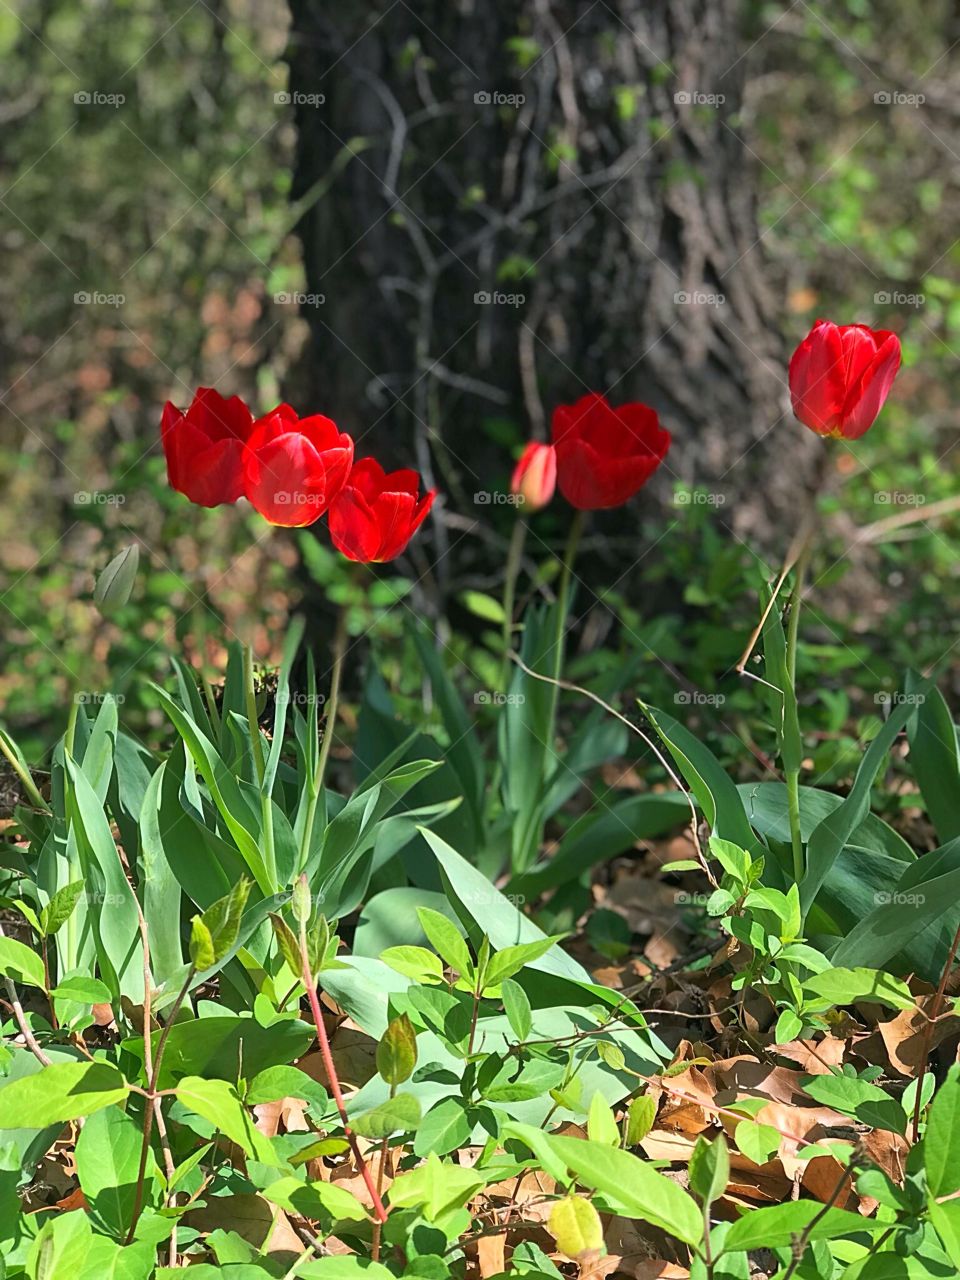 Random tulips in the woods